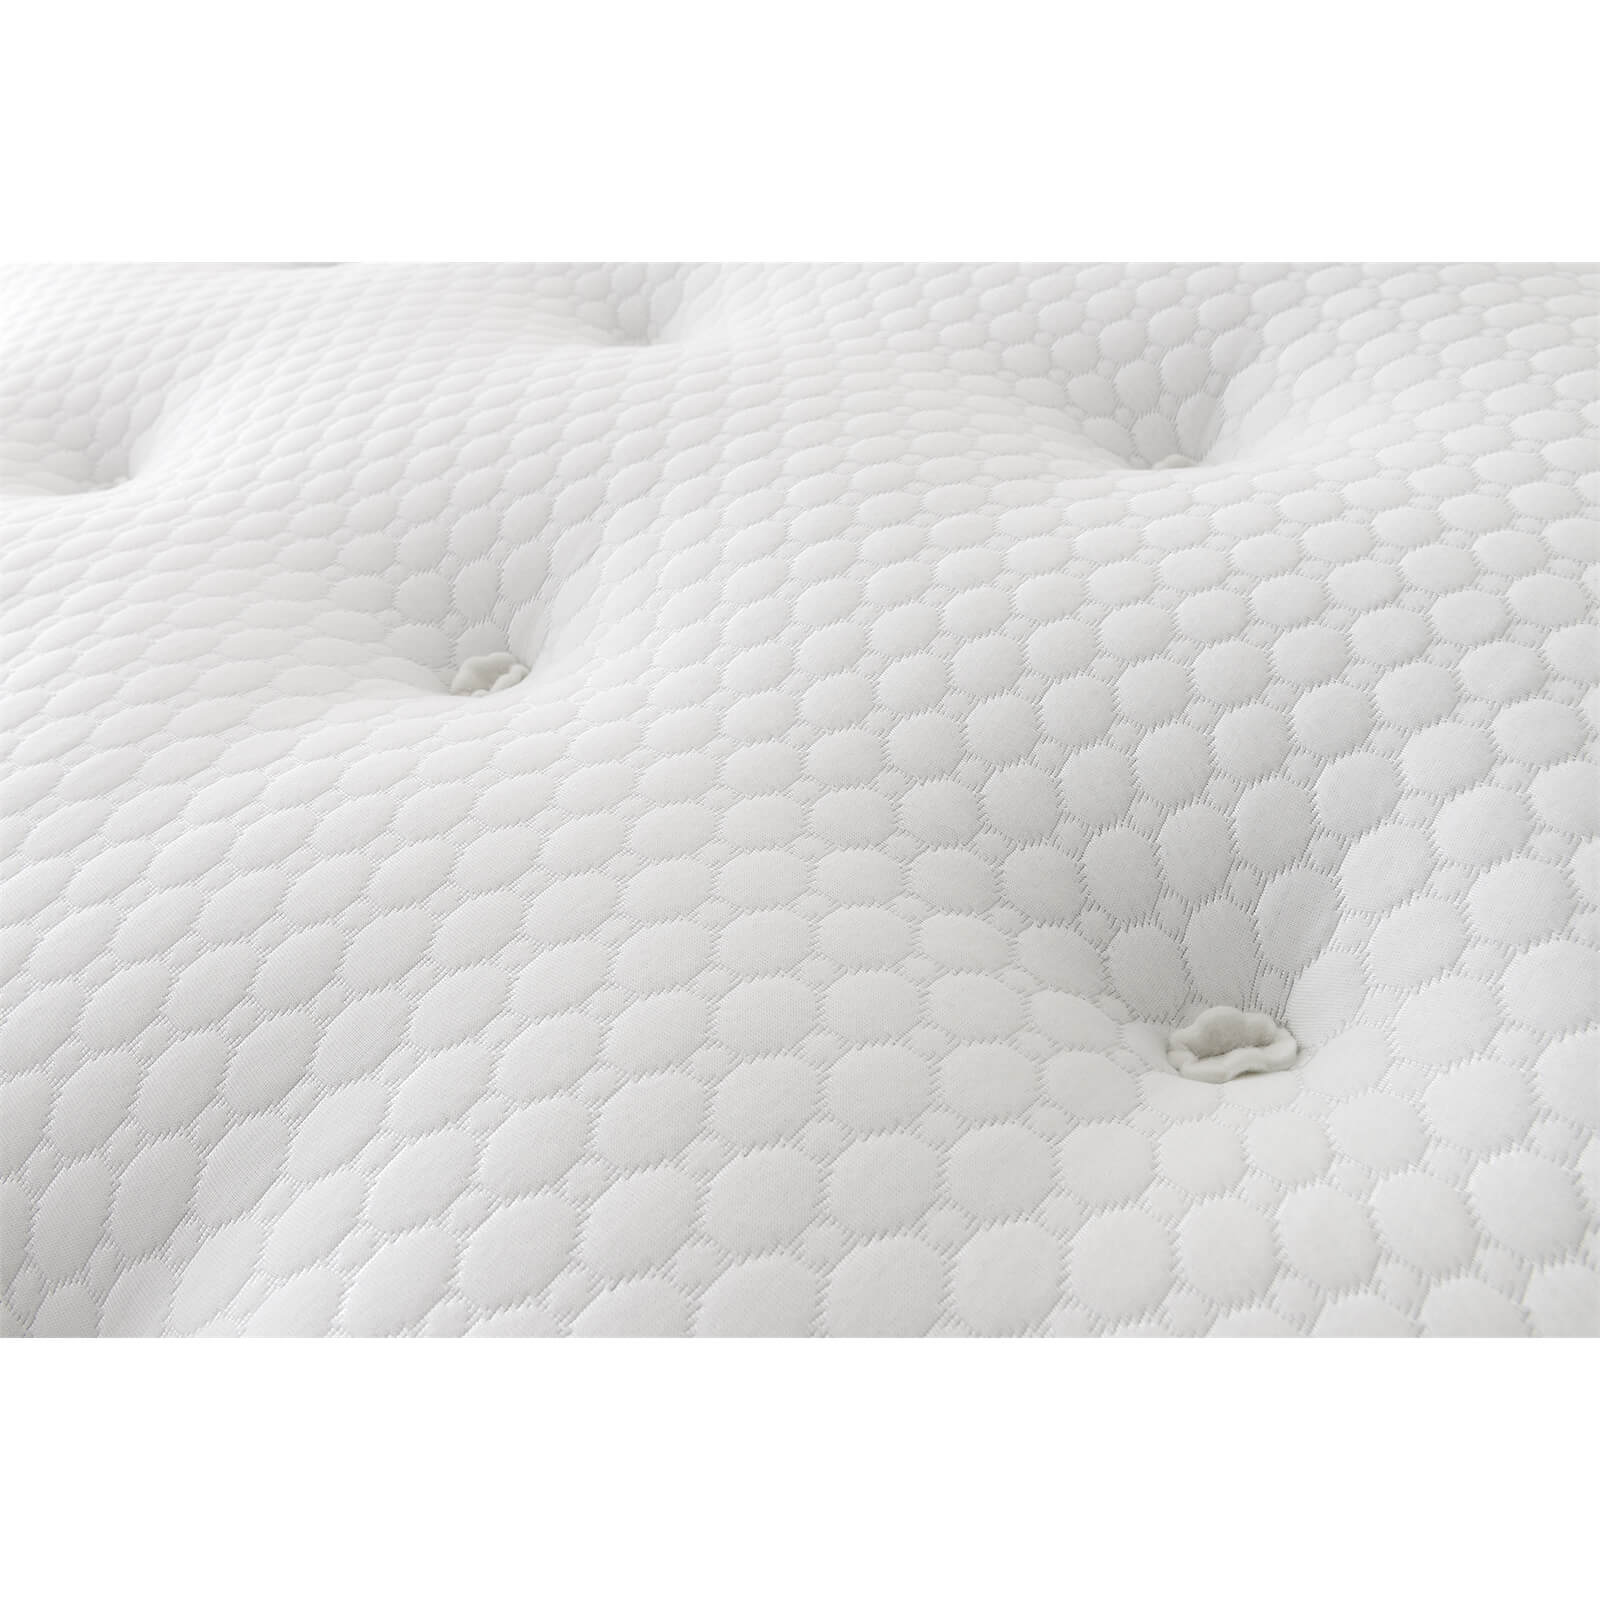 Silentnight Eco Comfort 1200 Pocket Divan Bed 4 Drawer - Slate Grey - Super King